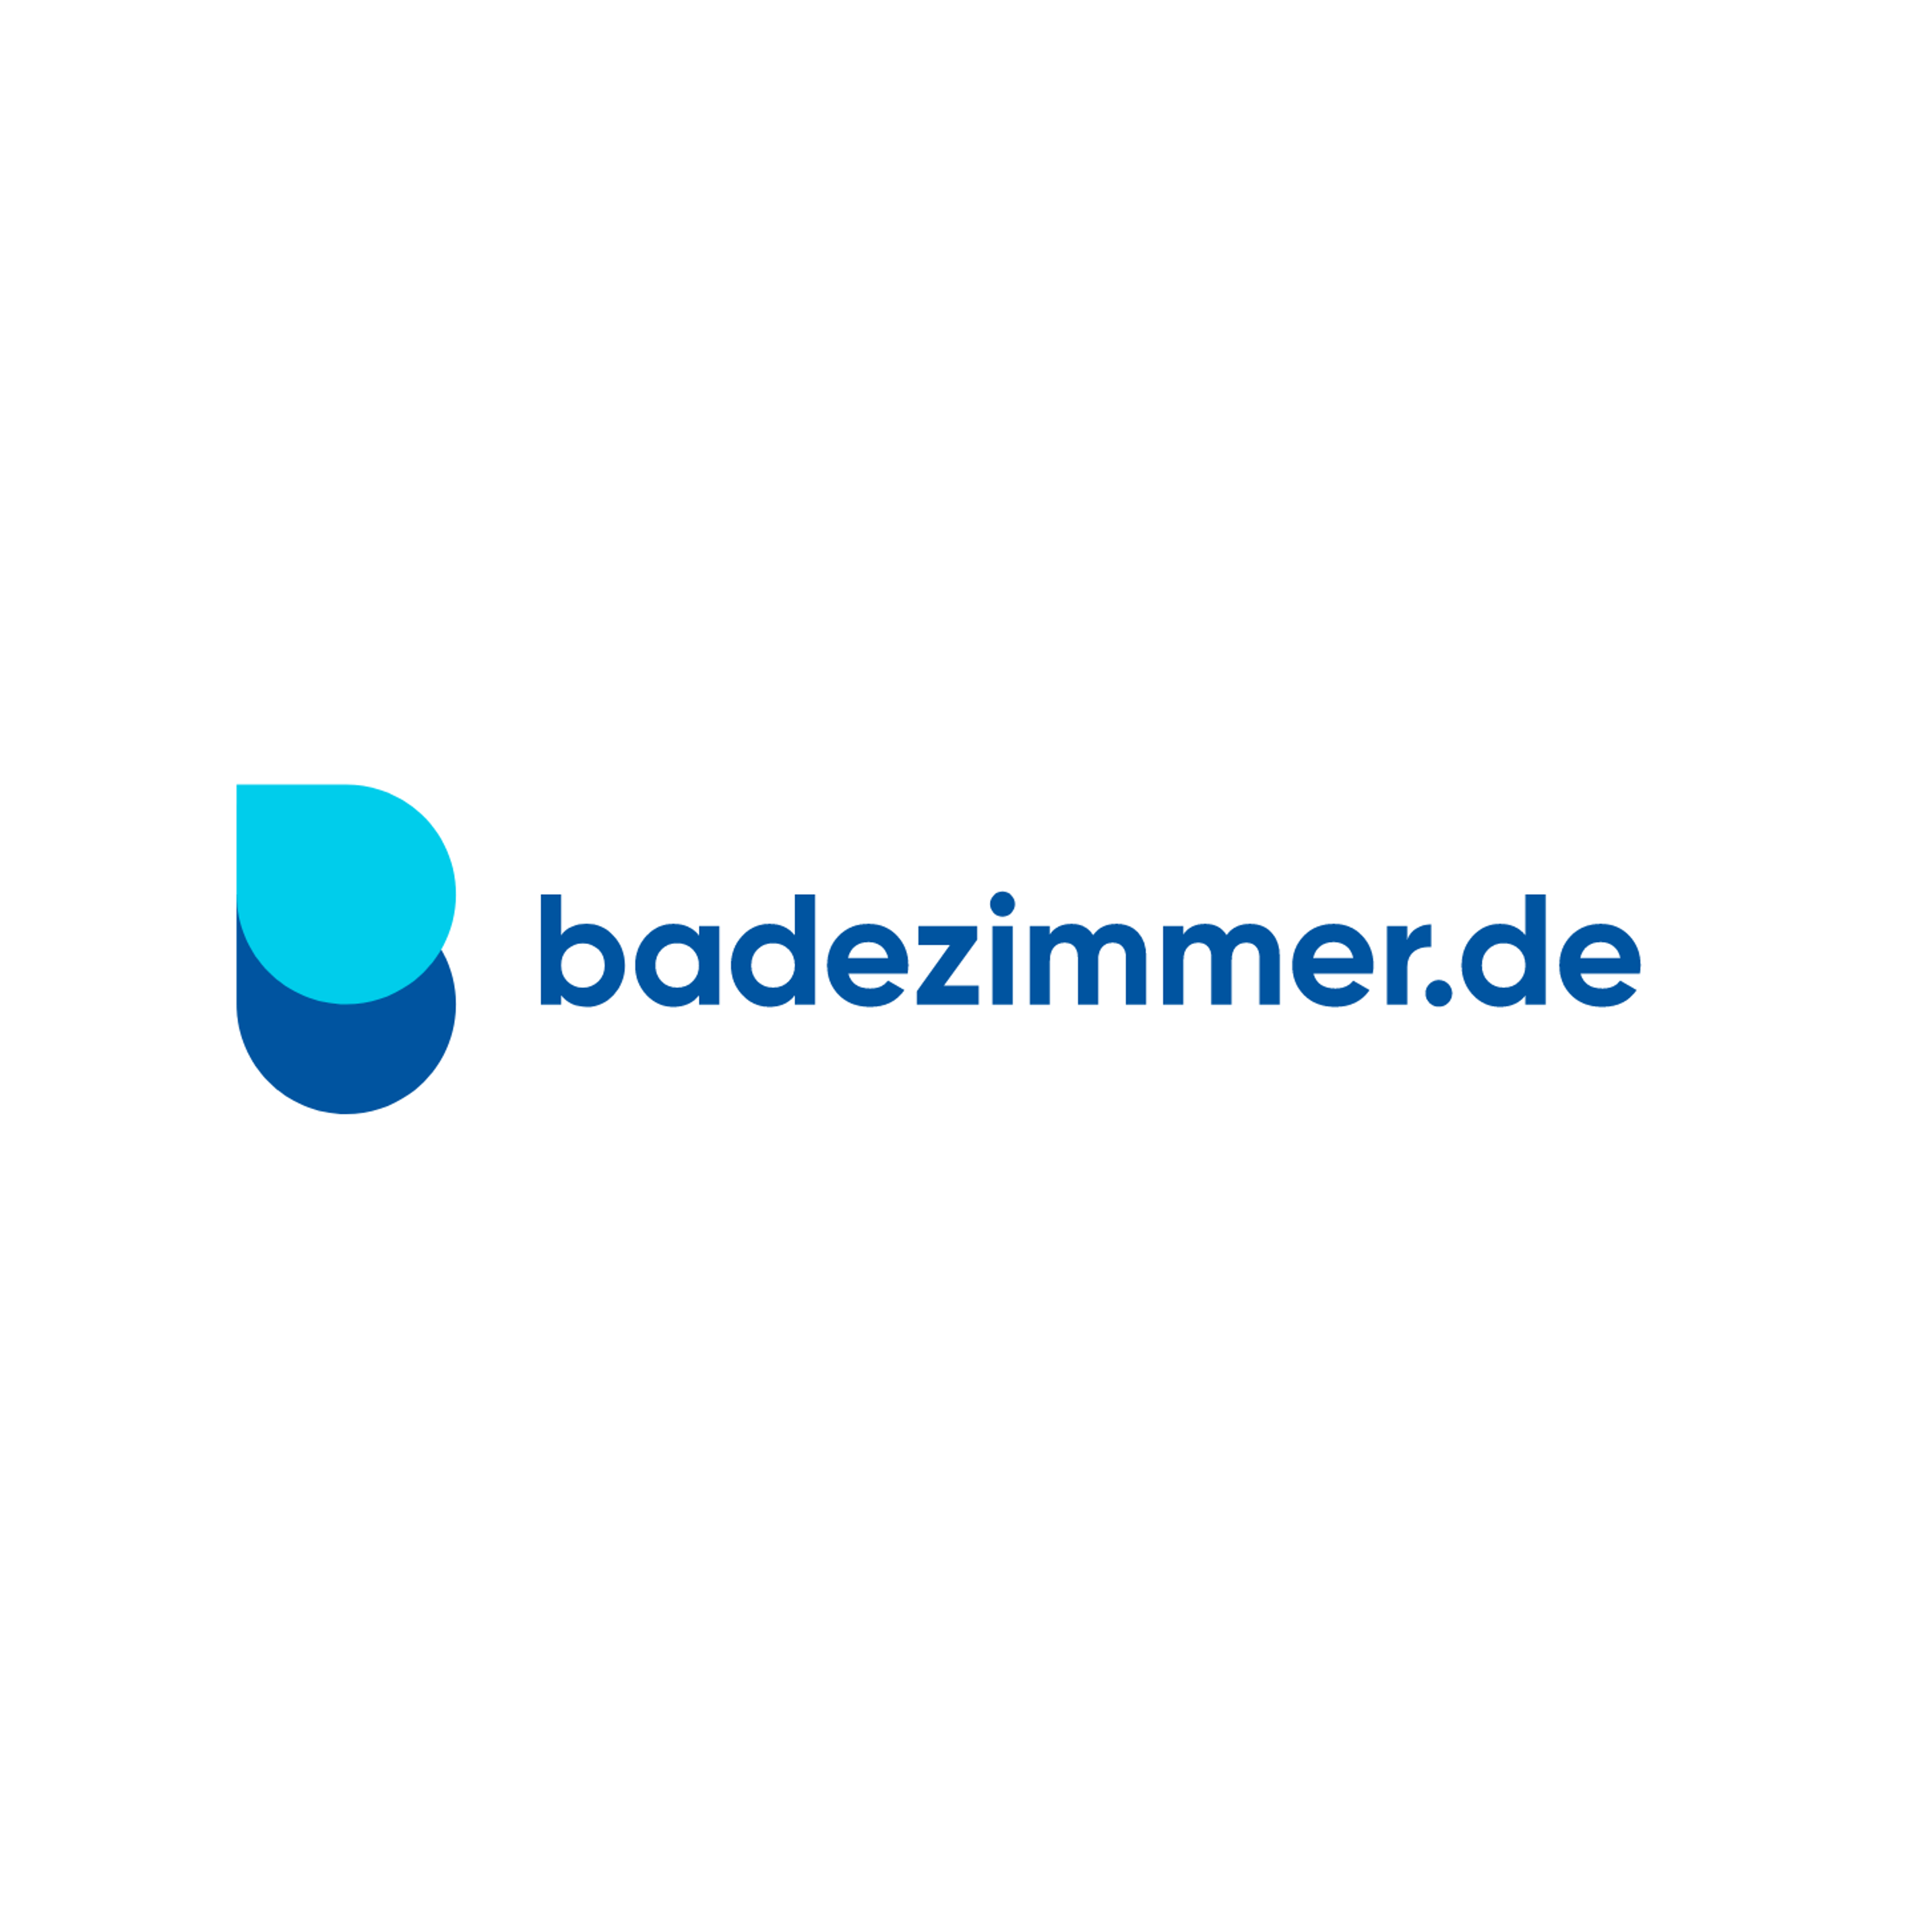 badezimmer.de Badausstellung Herne - Otto Bechem in Herne - Logo